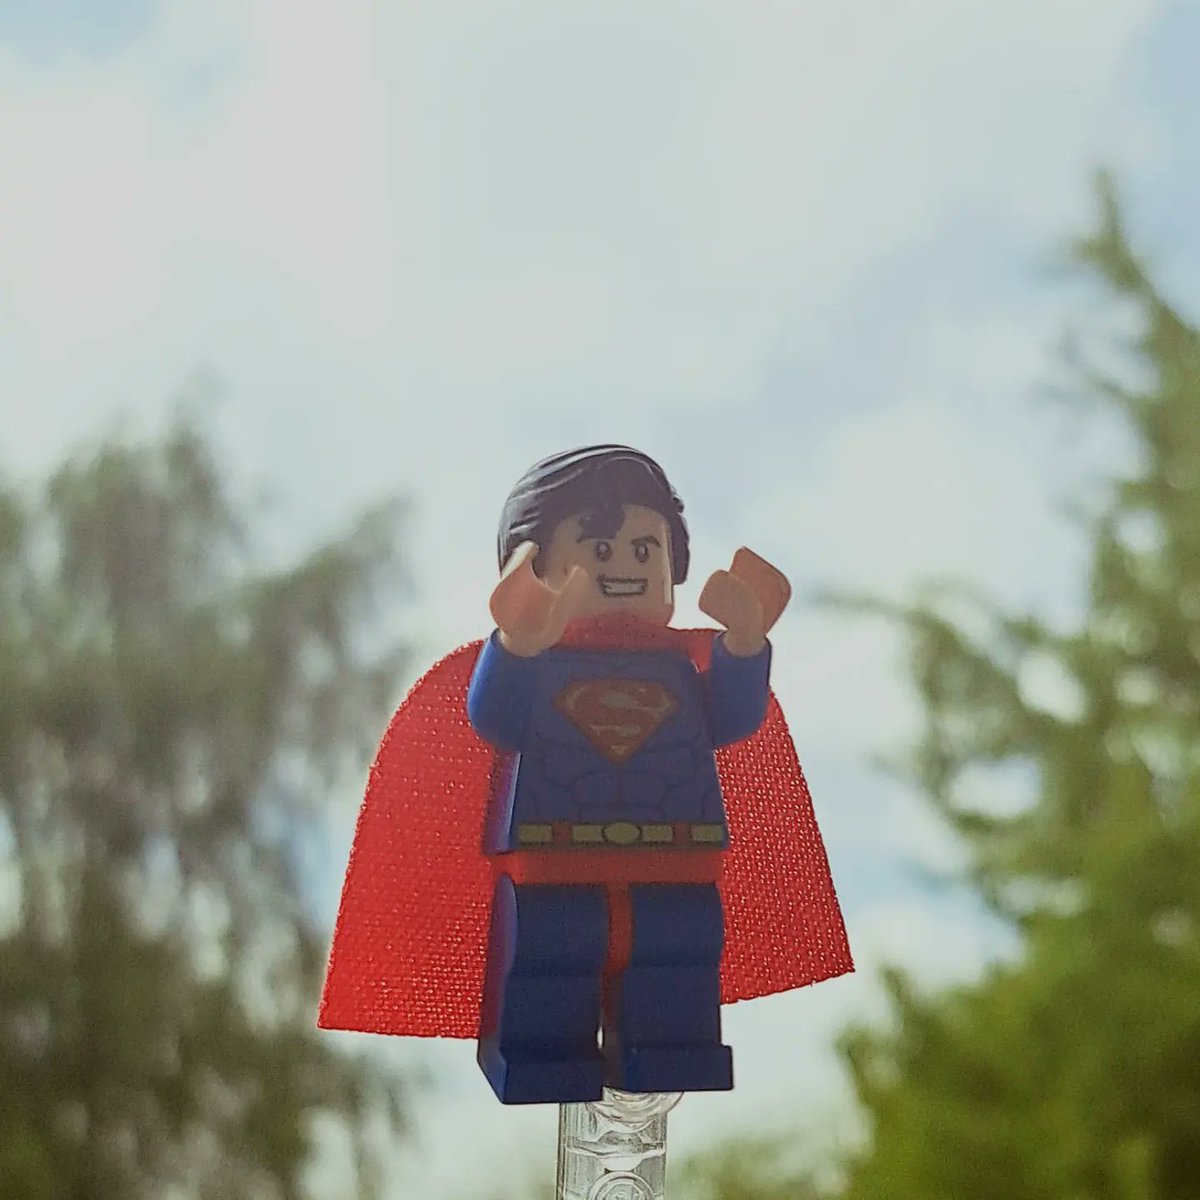 Happy (late) earthday! 🌏🌍🌎
#Lego #LegoPhotography #Superman